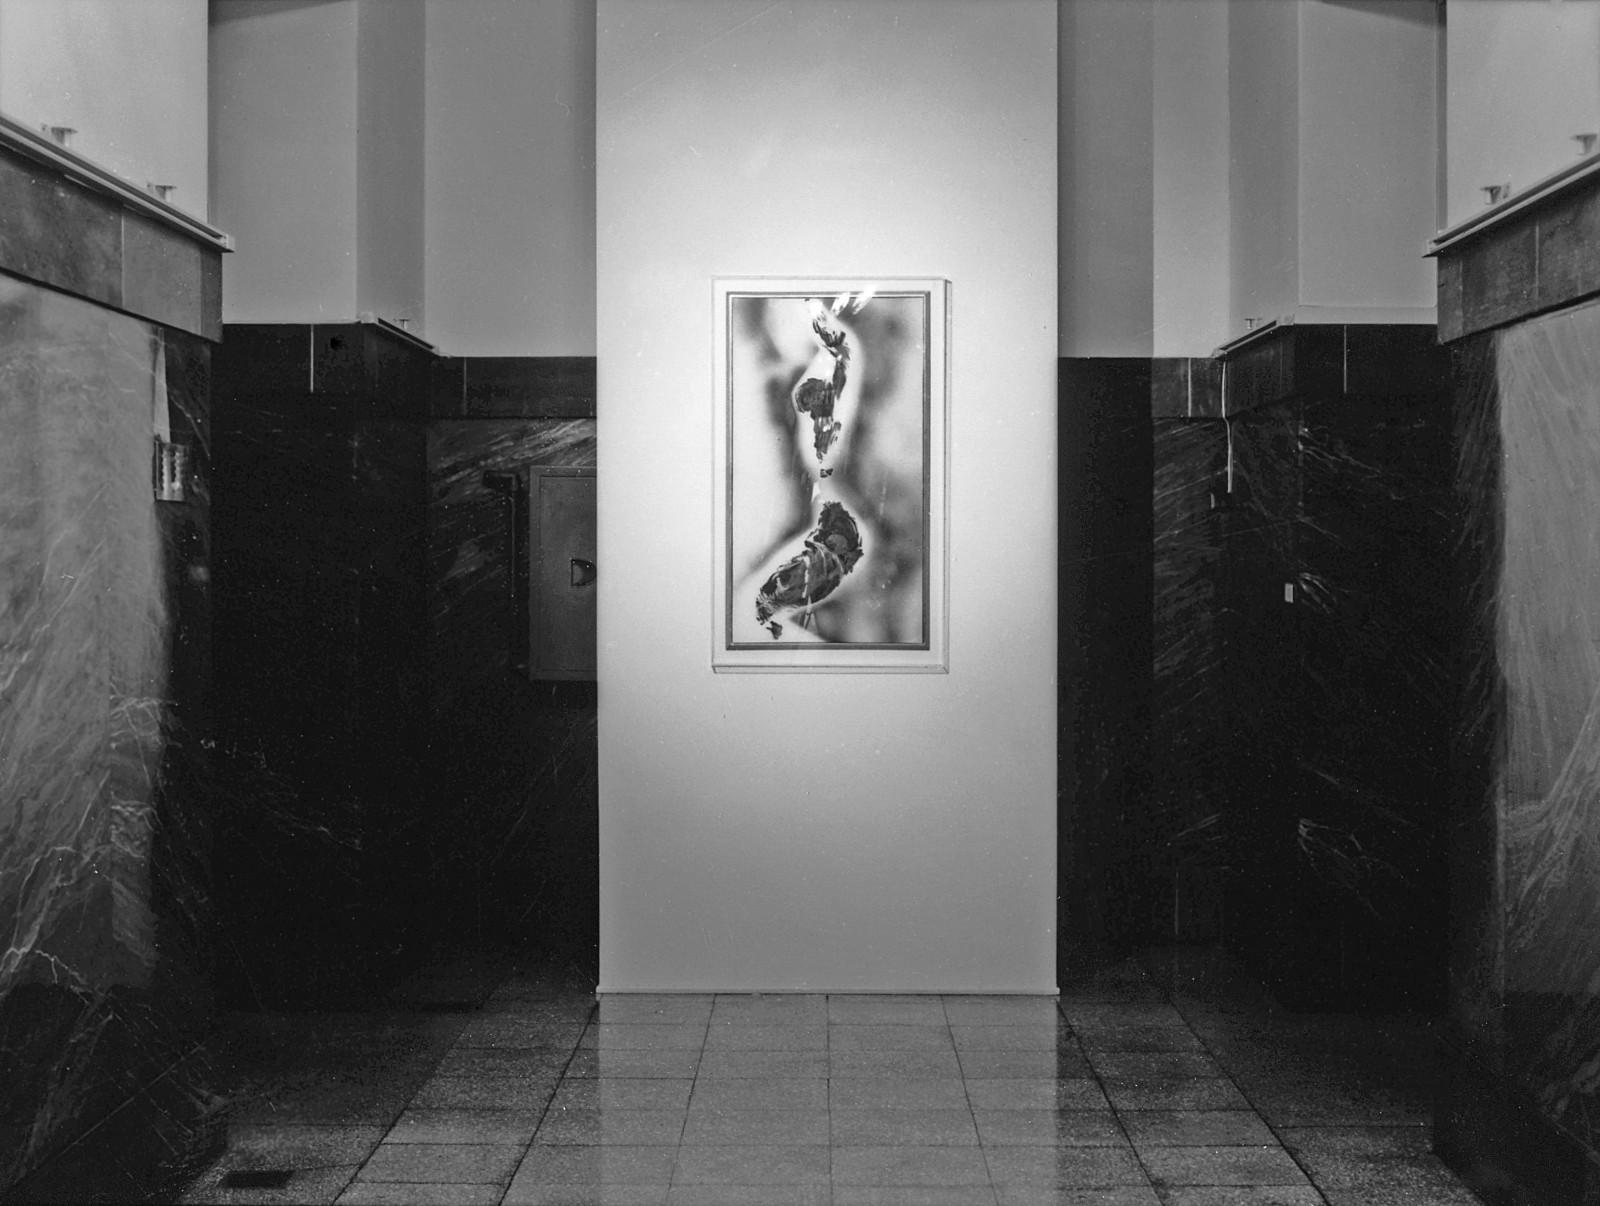 Vue de l'exposition "Yves Klein", Museet for Samtidskunst, 1997